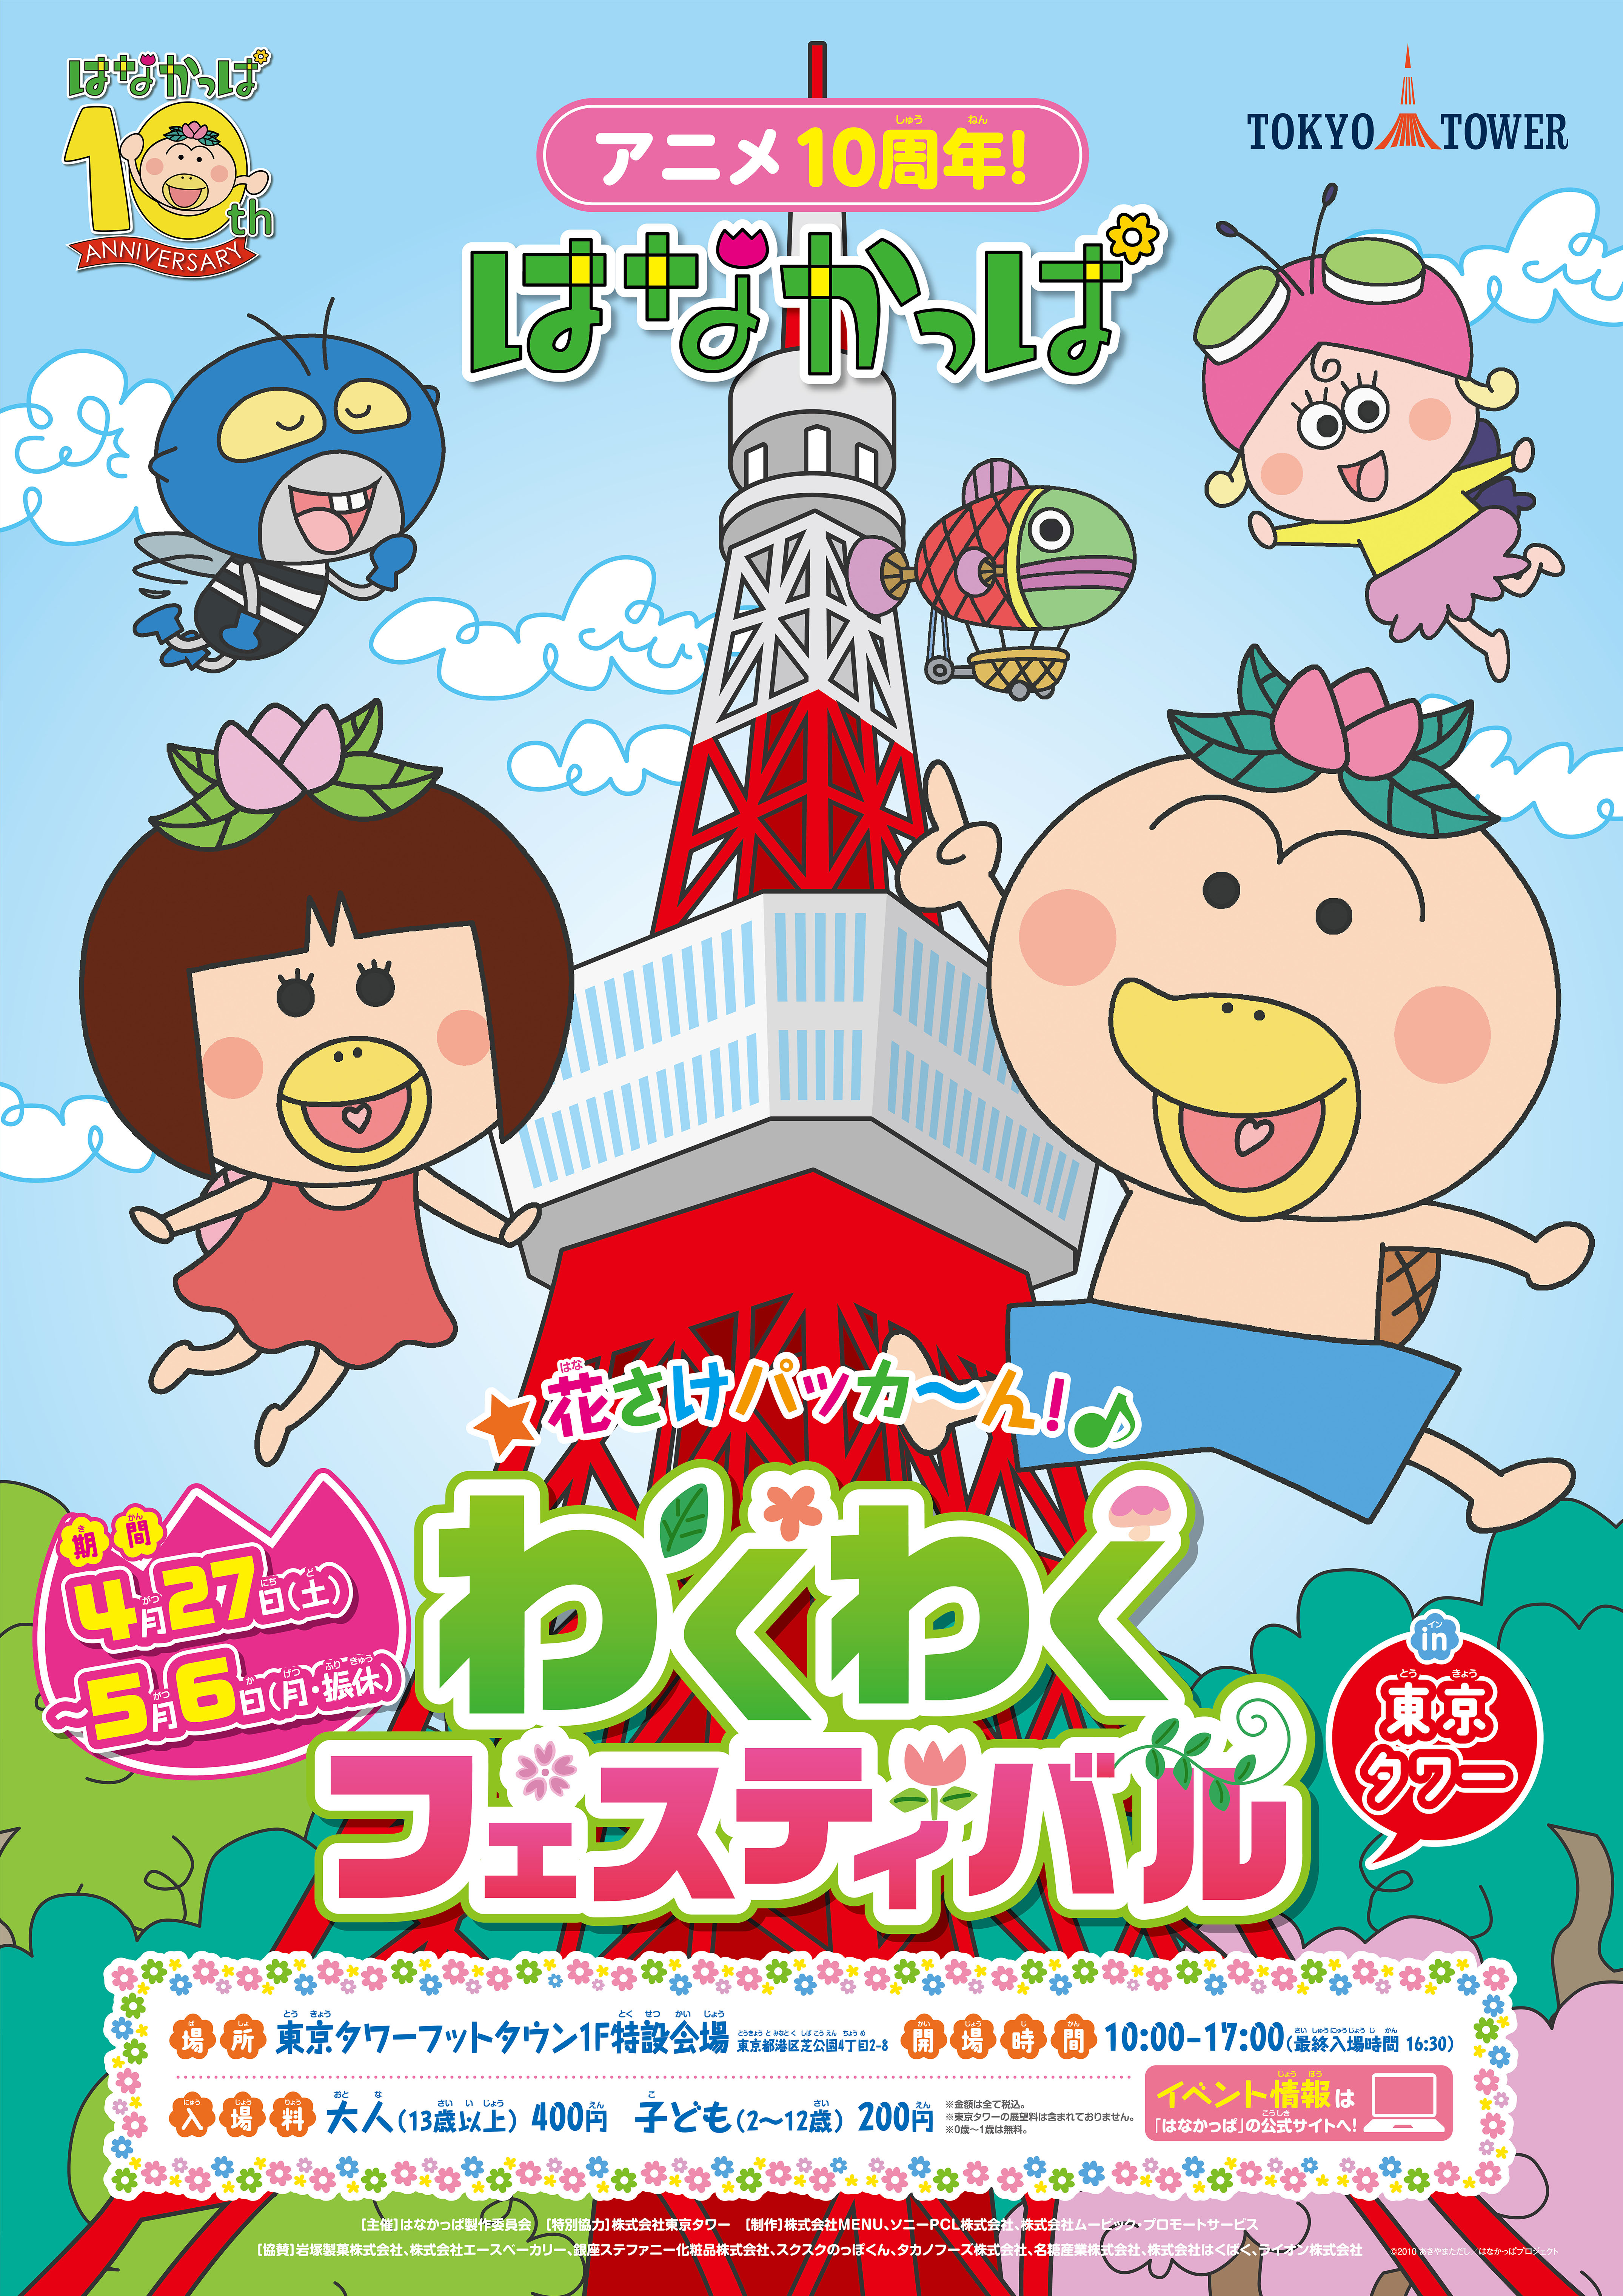 花さけ パッカ ん わくわくフェスティバル 4 27 土 5 6 月 振休 に 東京タワー1階で開催決定 株式会社tokyo Towerのプレスリリース